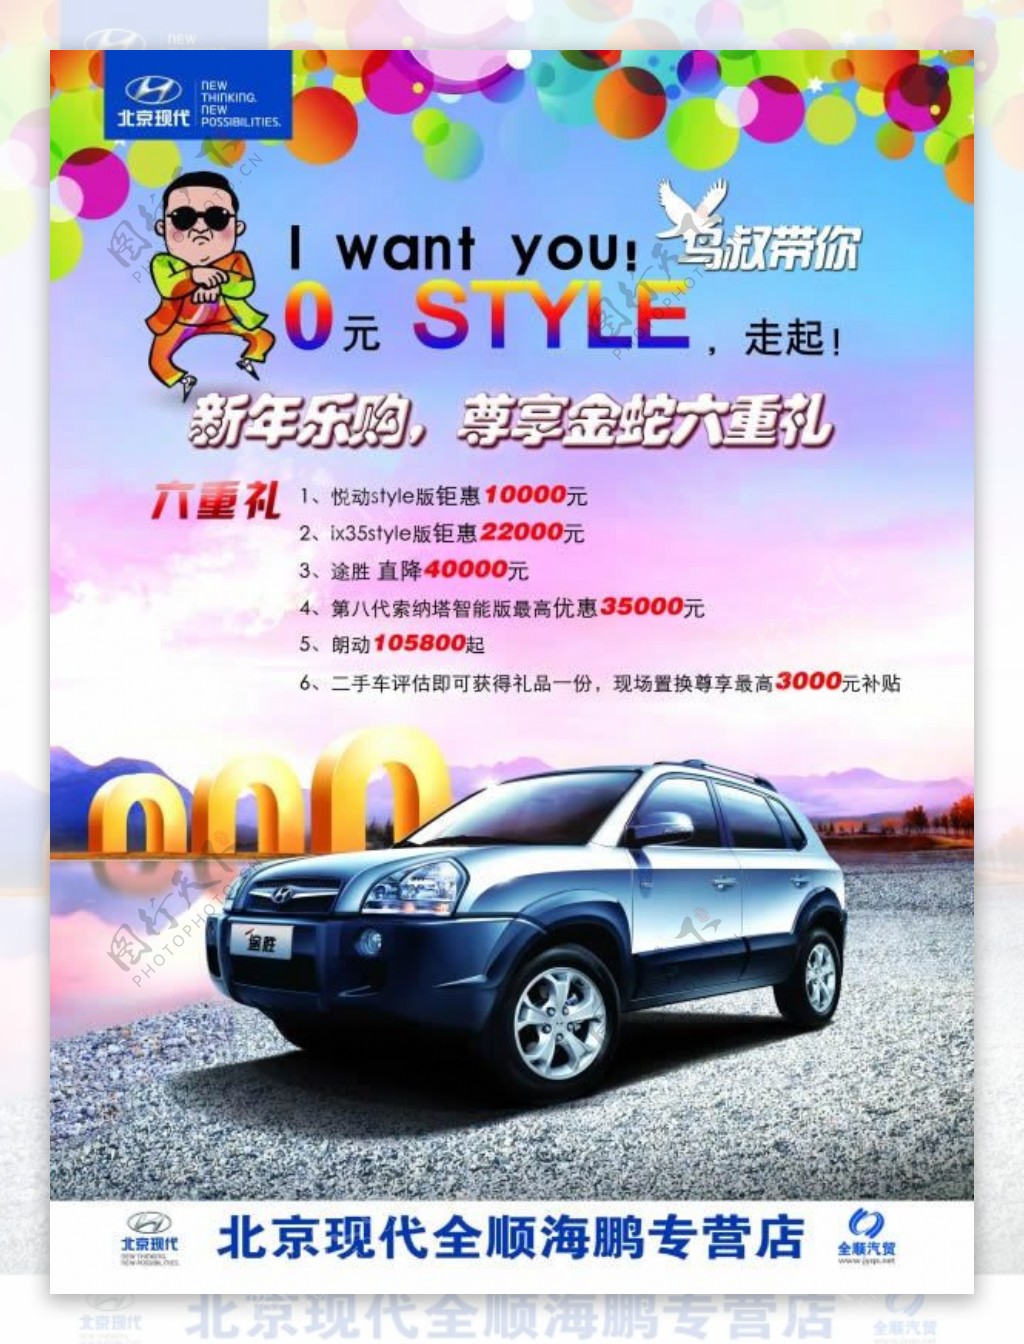 北京现代专营店活动宣传海报